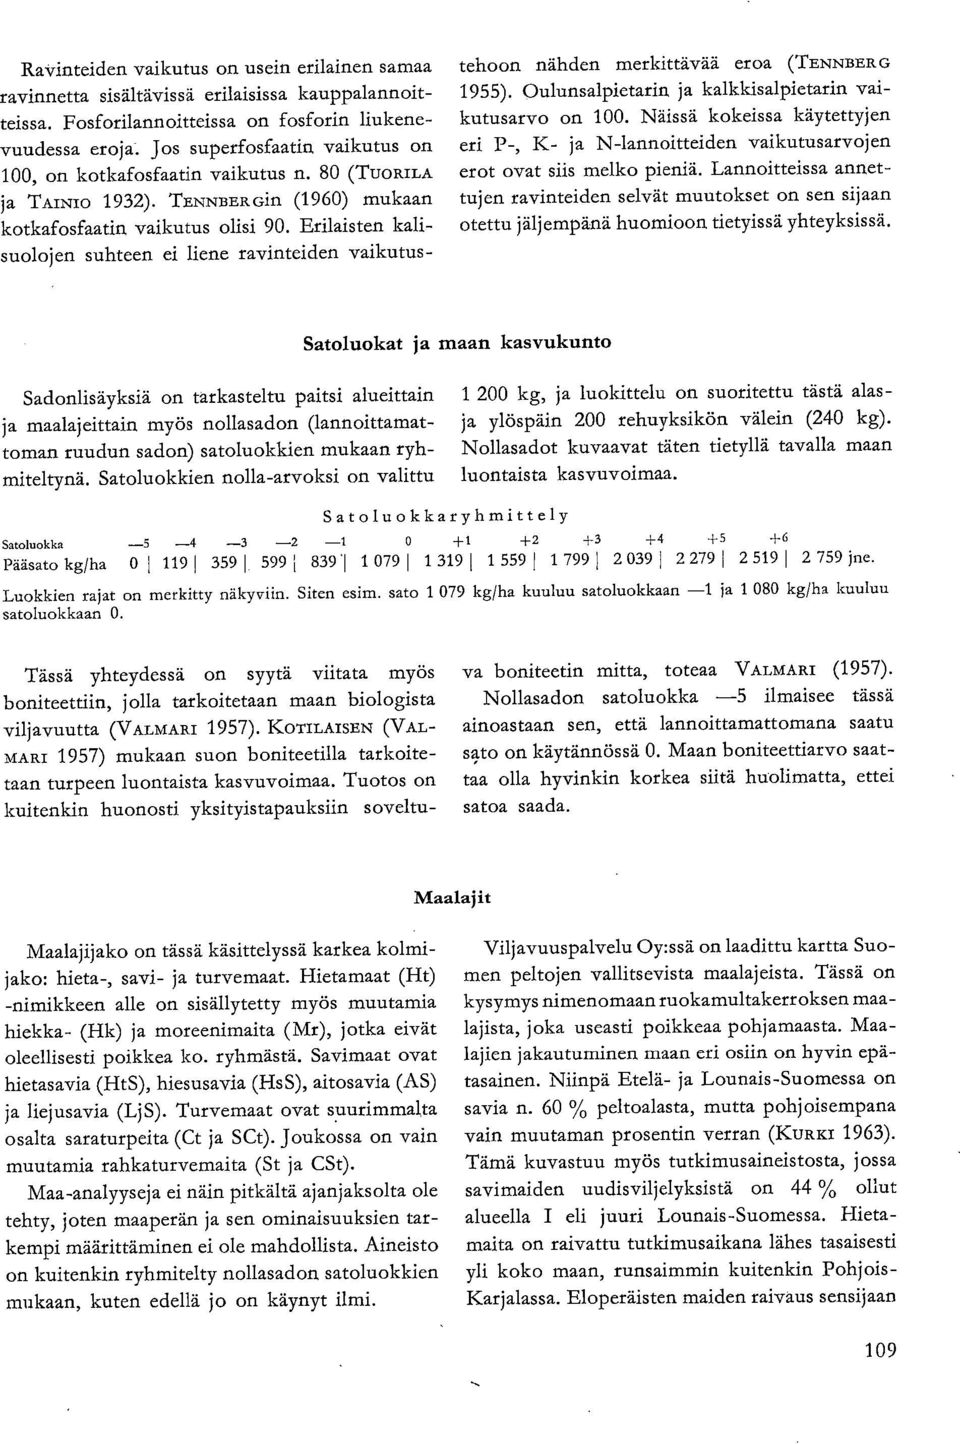 Erilaisten kalisuolojen suhteen ei liene ravinteiden vaikutus- tehoon nähden merkittävää eroa (TENNBER G 1955). Oulunsalpietarin, ja kalkkisalpietarin vaikutusarvo on 100.